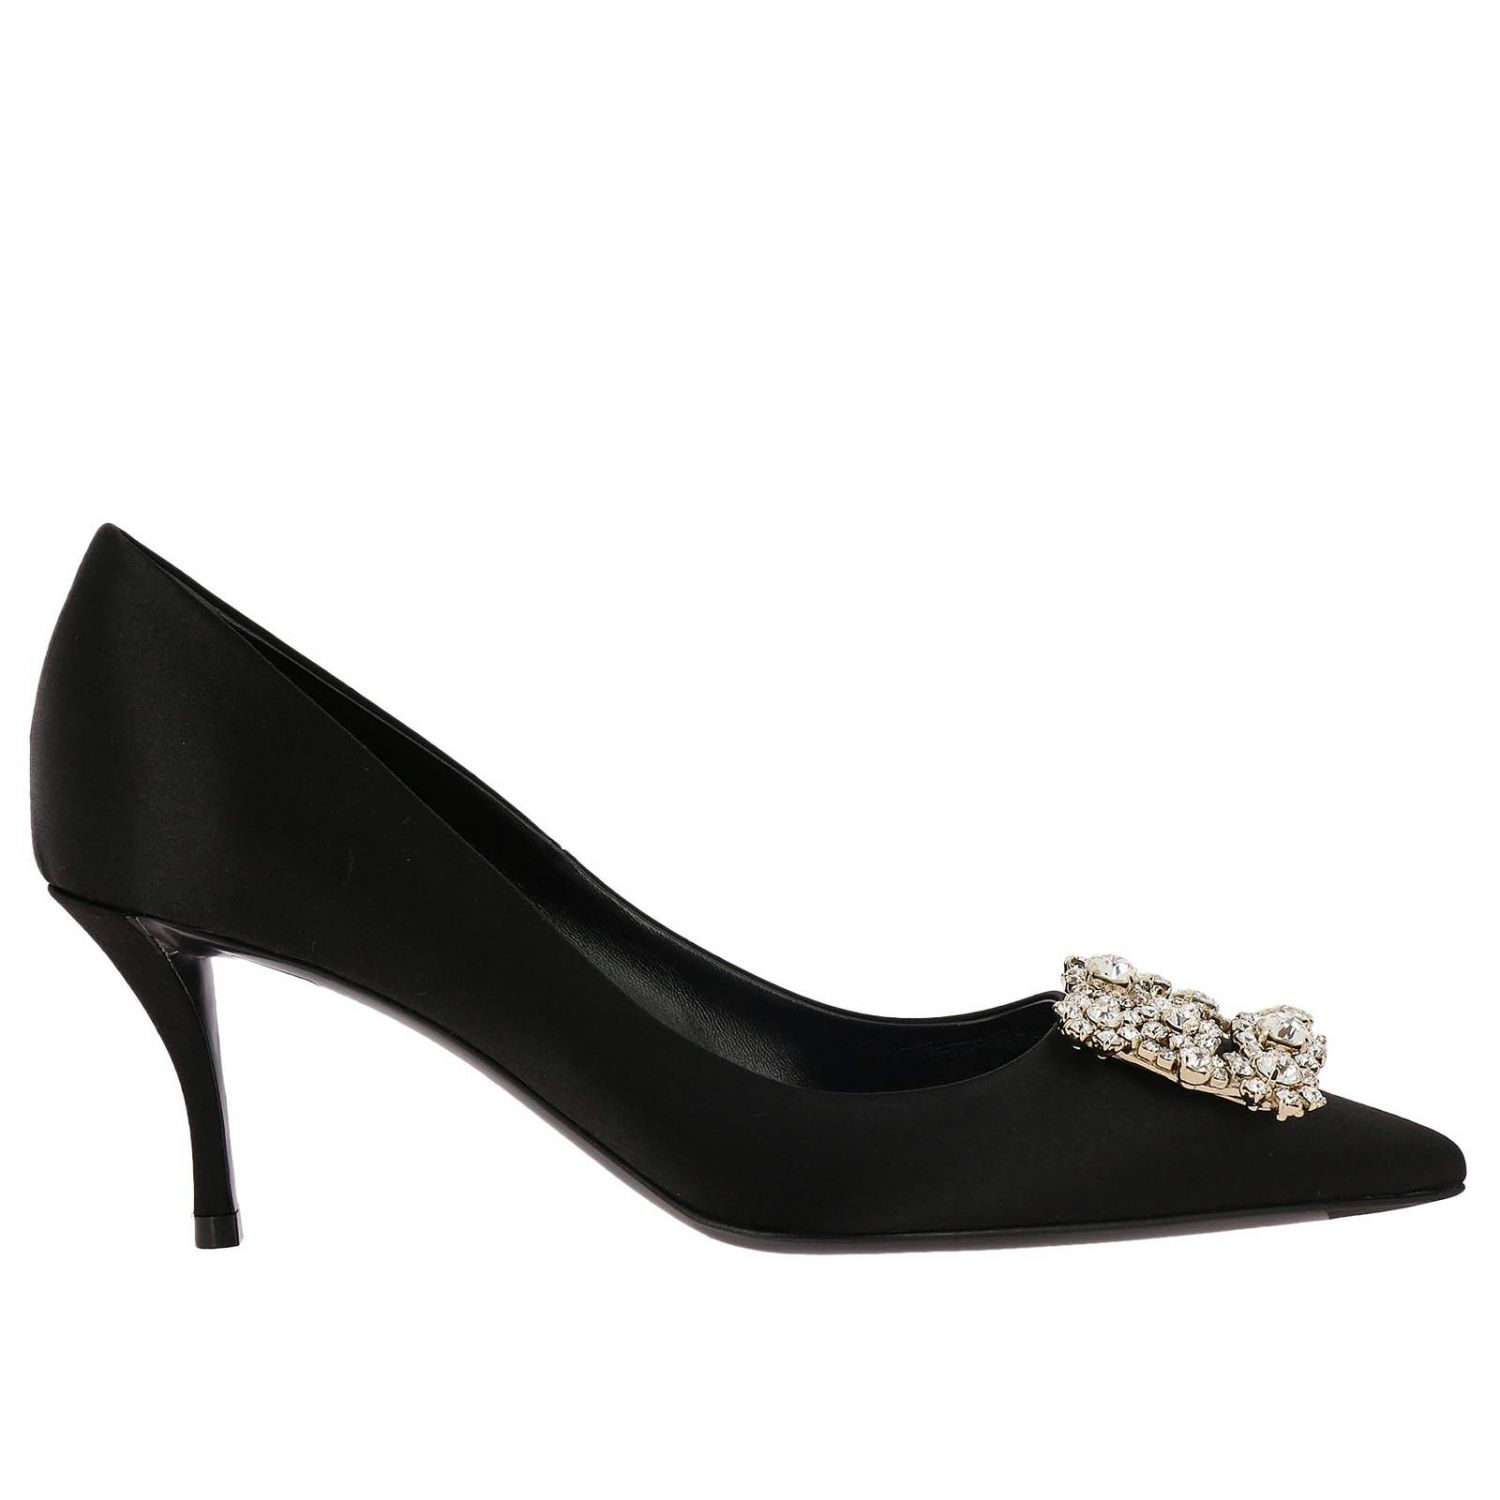 Mujer Zapatos de Tacones de Zapatos de salón Salón en raso hebilla flower strass Roger Vivier de Seda de color Negro 